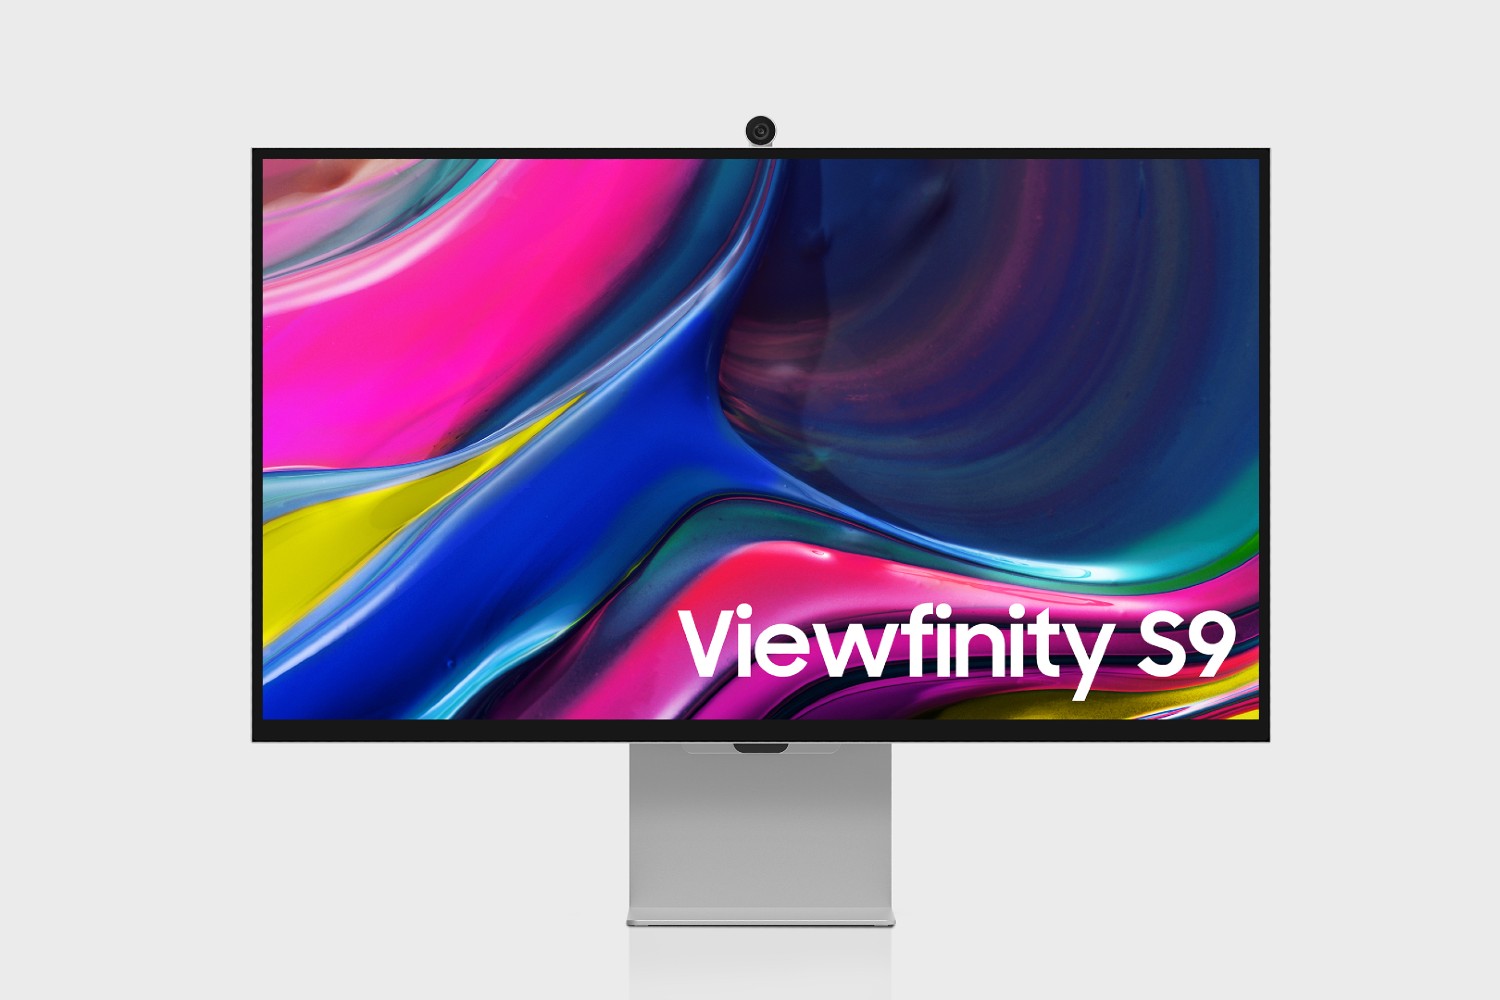 مانیتور Samsung Viewfinity S9 با یک وب کم در بالا.